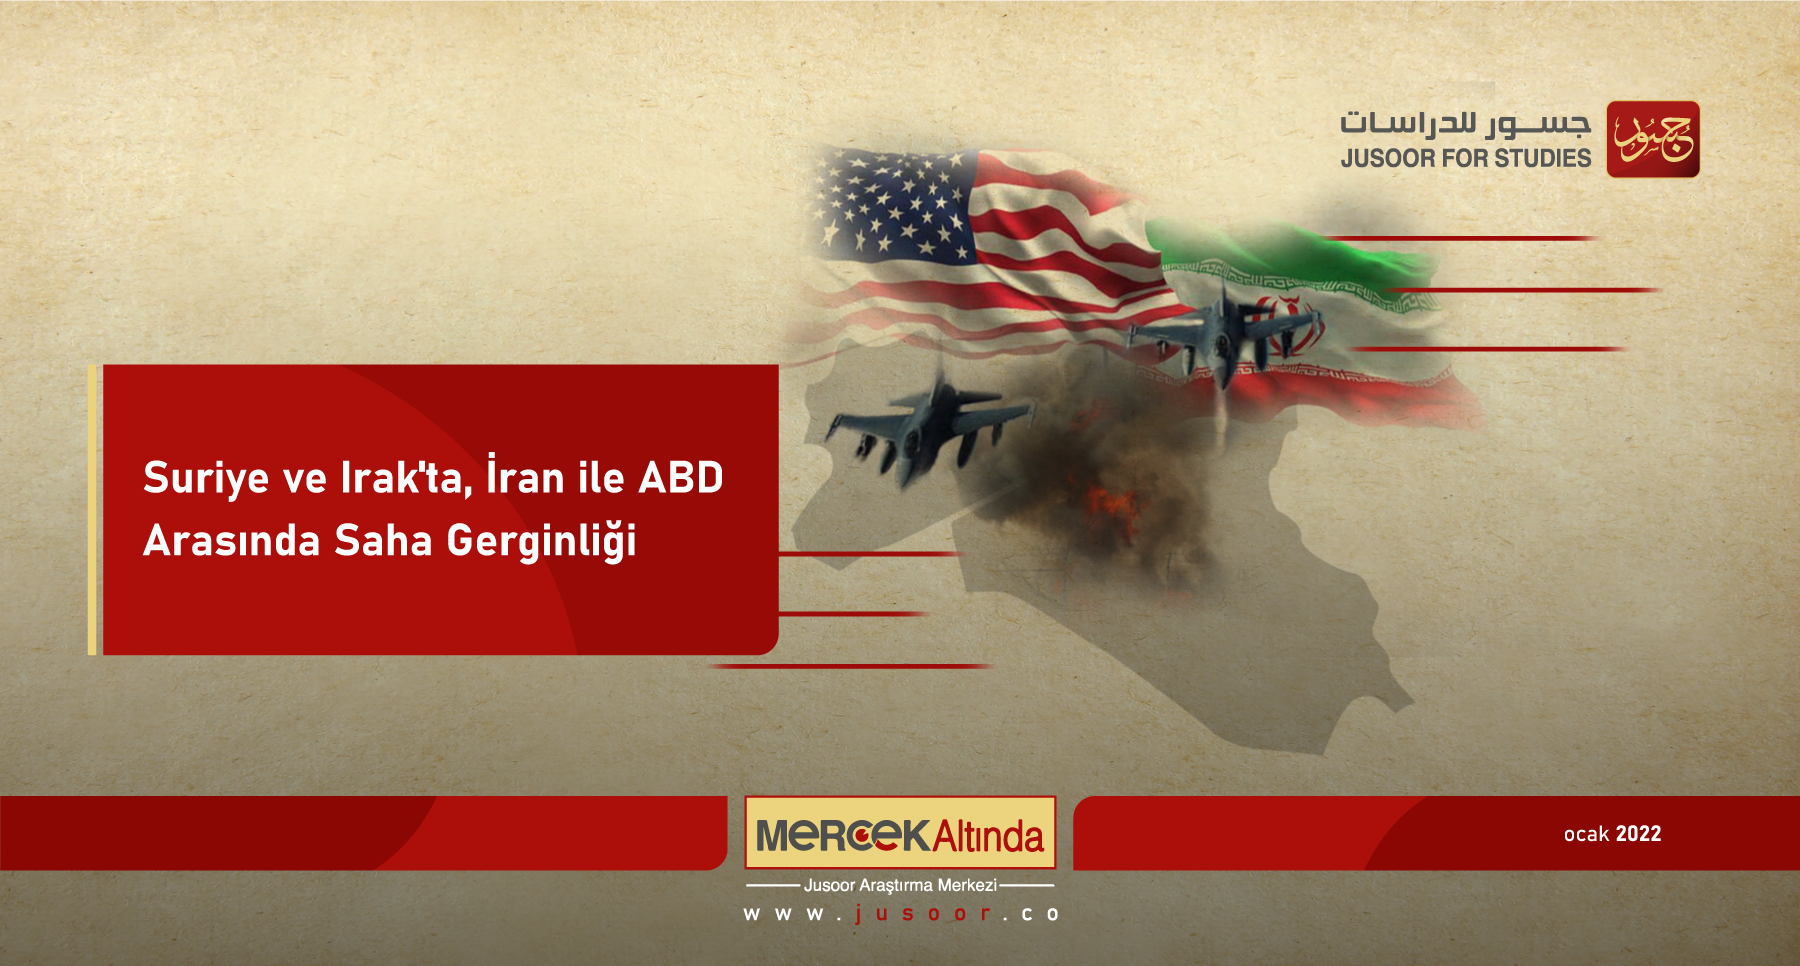 Suriye ve Irak'ta, İran ile ABD Arasında Saha Gerginliği